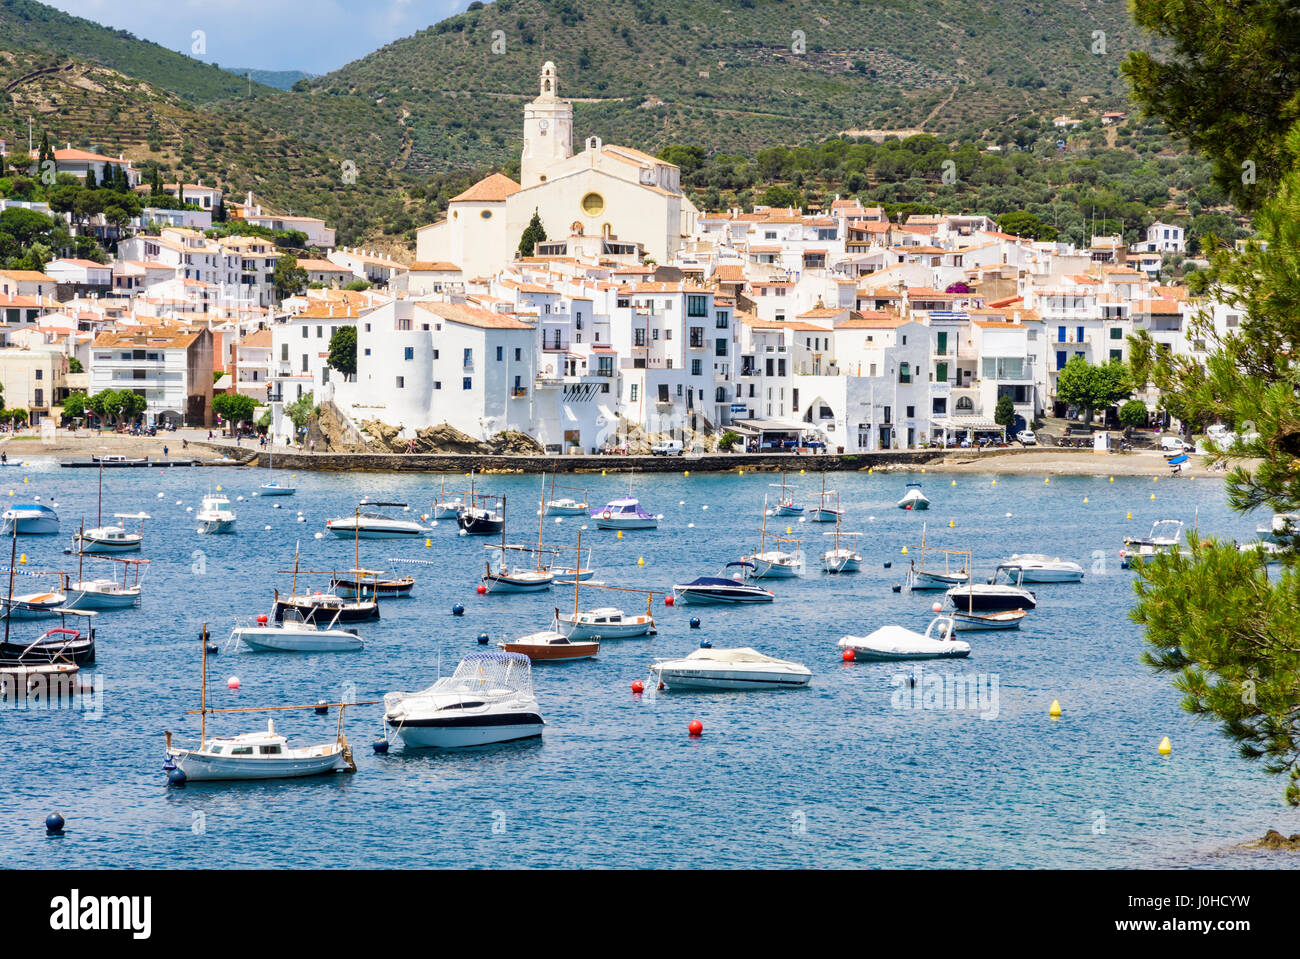 Weiß getünchten Dorf Cadaqués gekrönt von der Kirche Santa Maria mit Blick auf Boote in den blauen Gewässern des Cadaques Bucht, Cadaques, Katalonien, Spanien Stockfoto